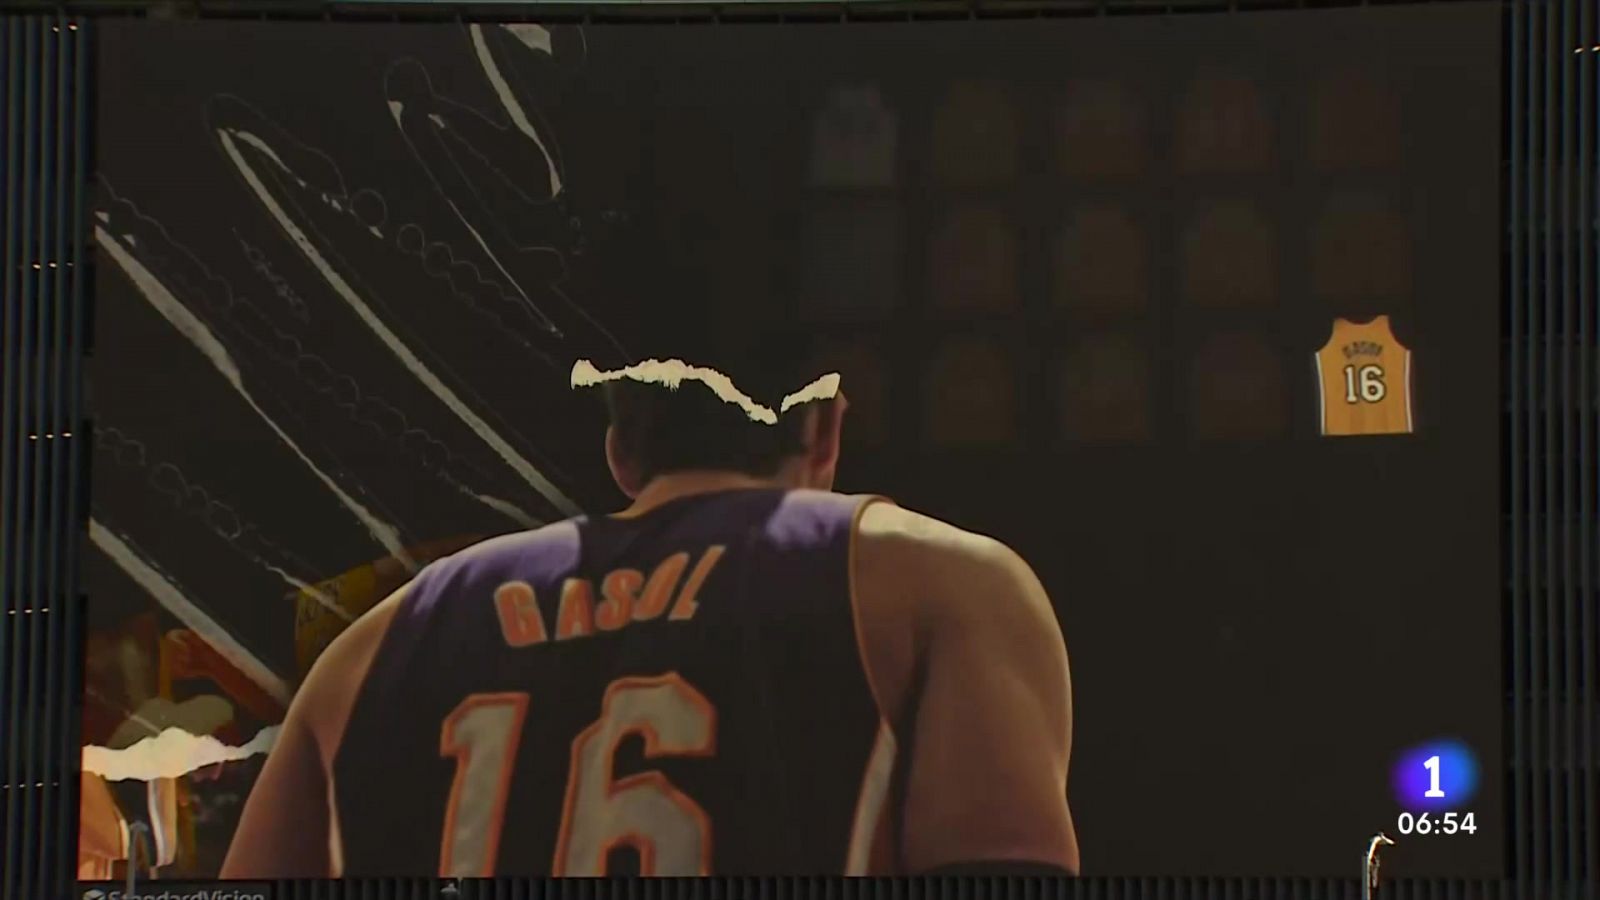 Los Lakers retiran el 16 de Gasol: "Es un reconocimiento muy grande" - ver ahora